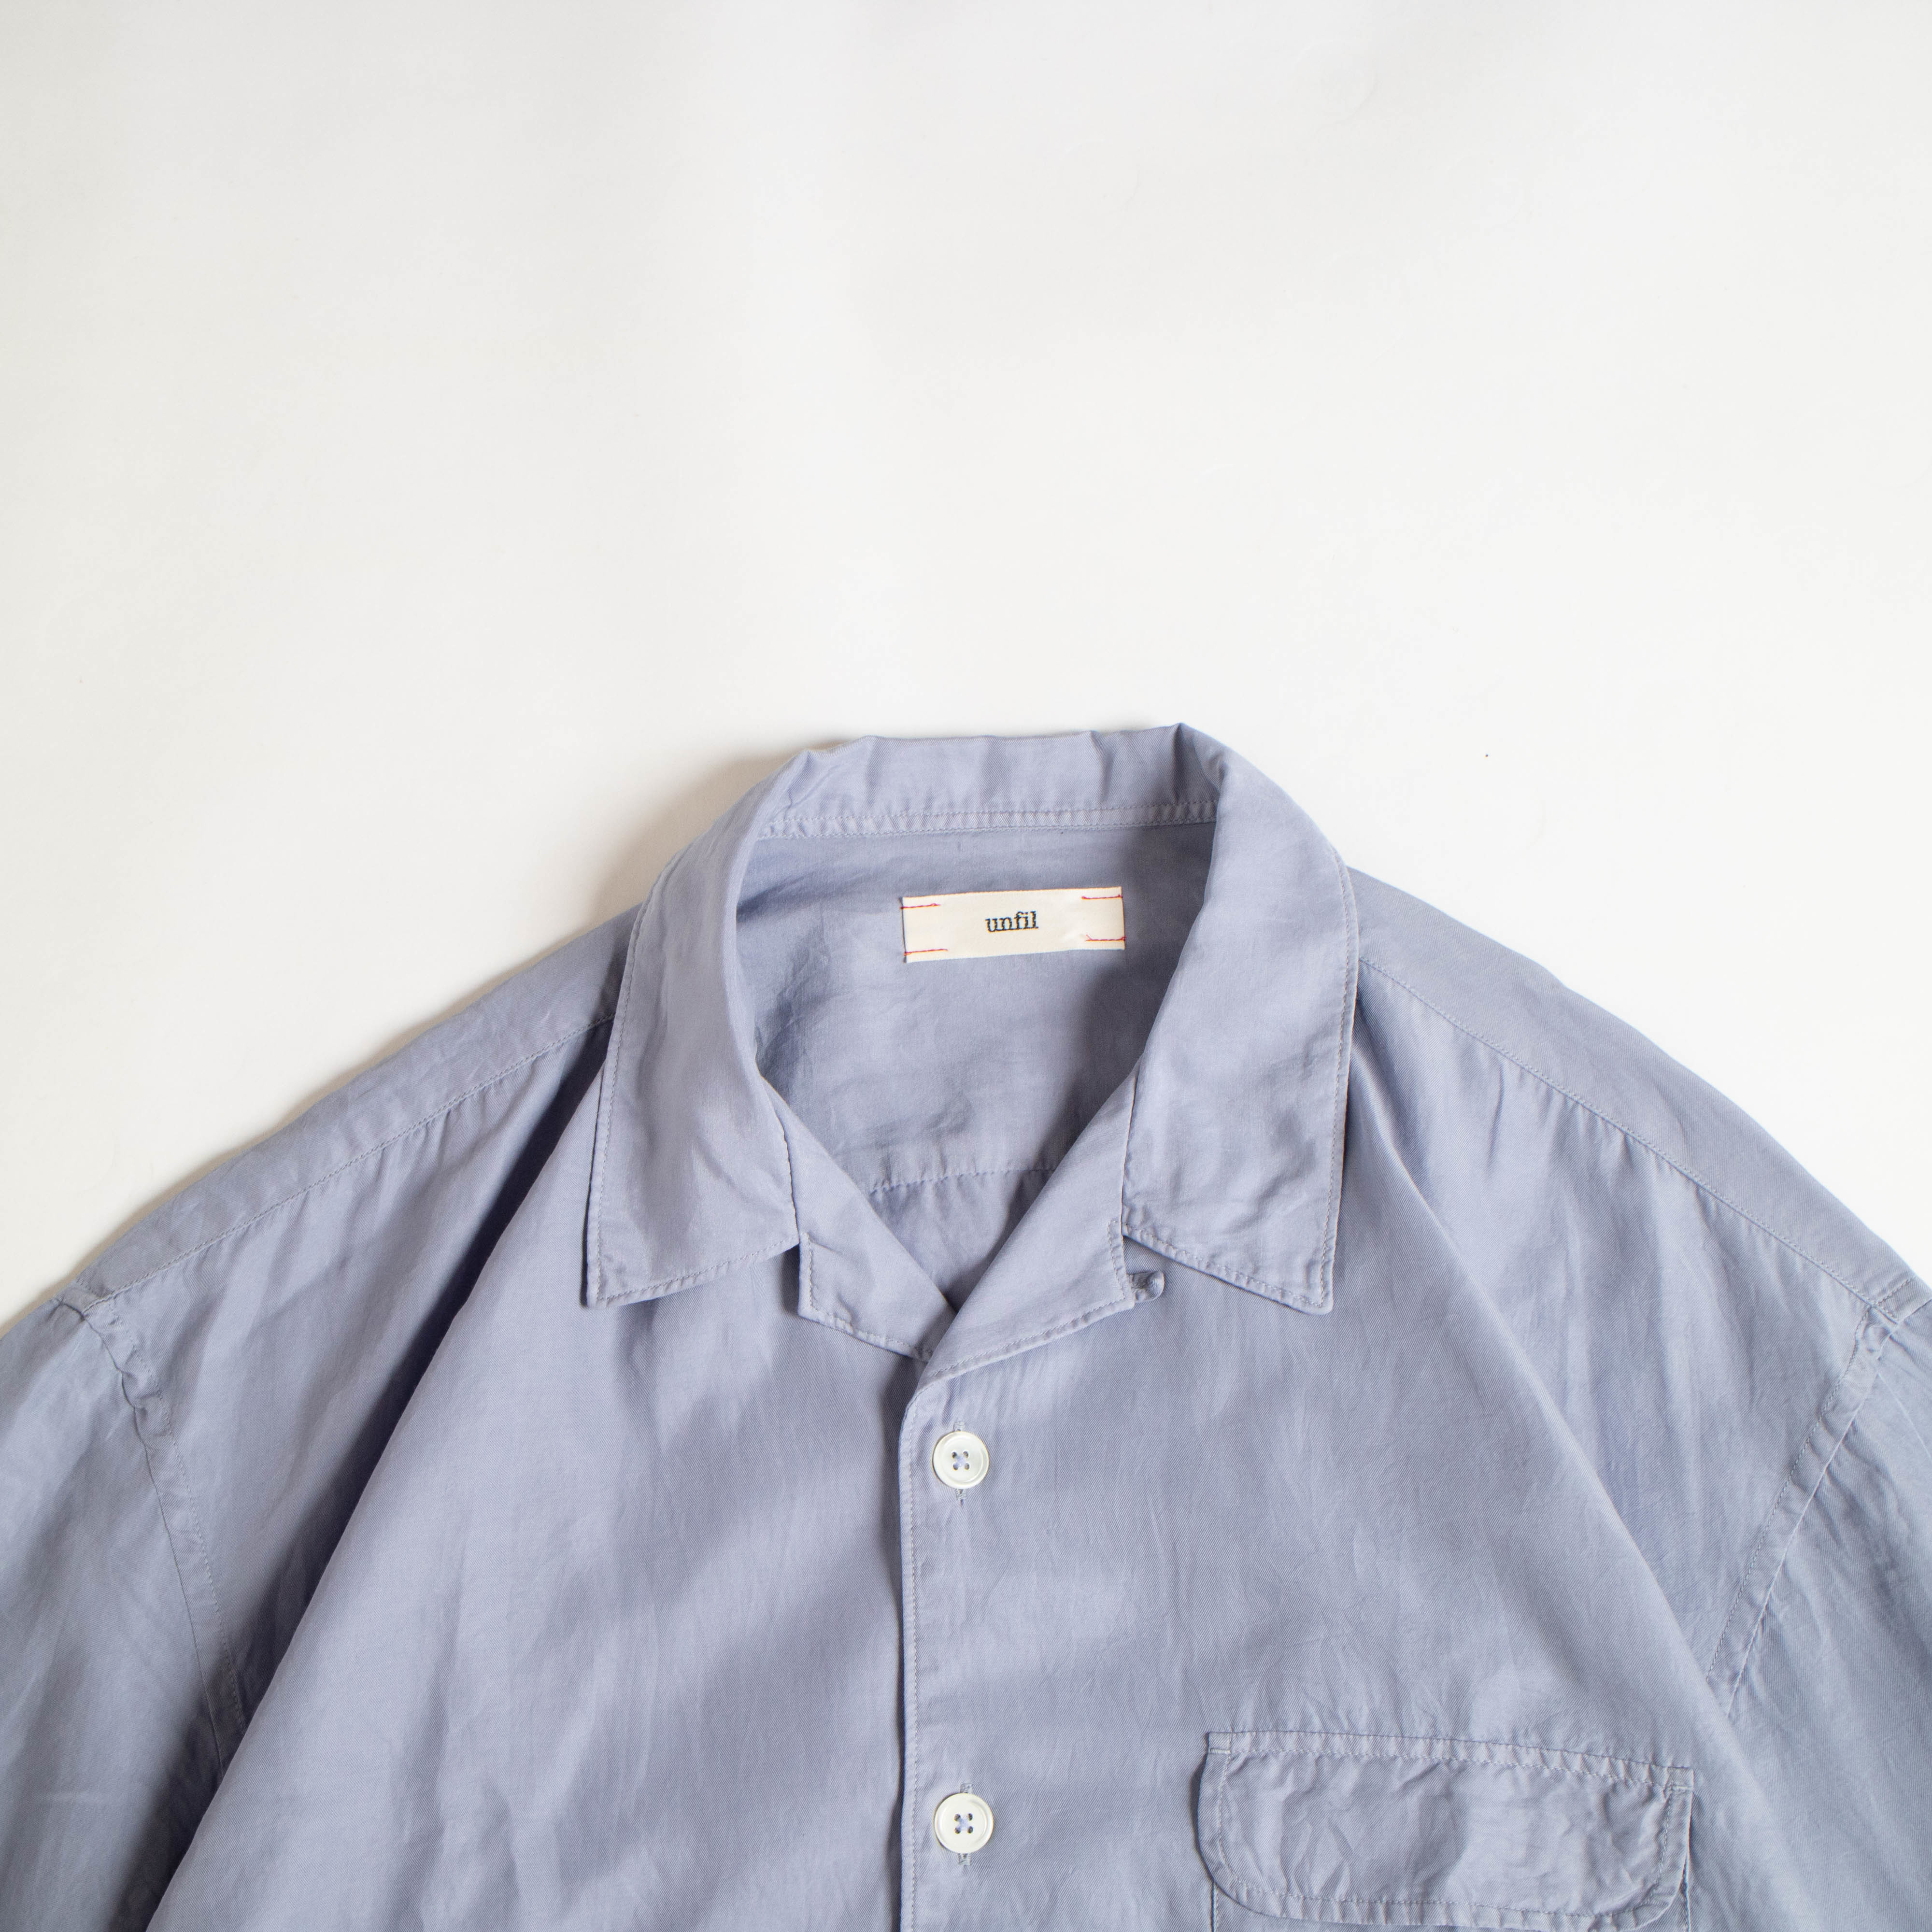 【サイズ】 unfil オープンカラーシャツ サイズ4 サイズ